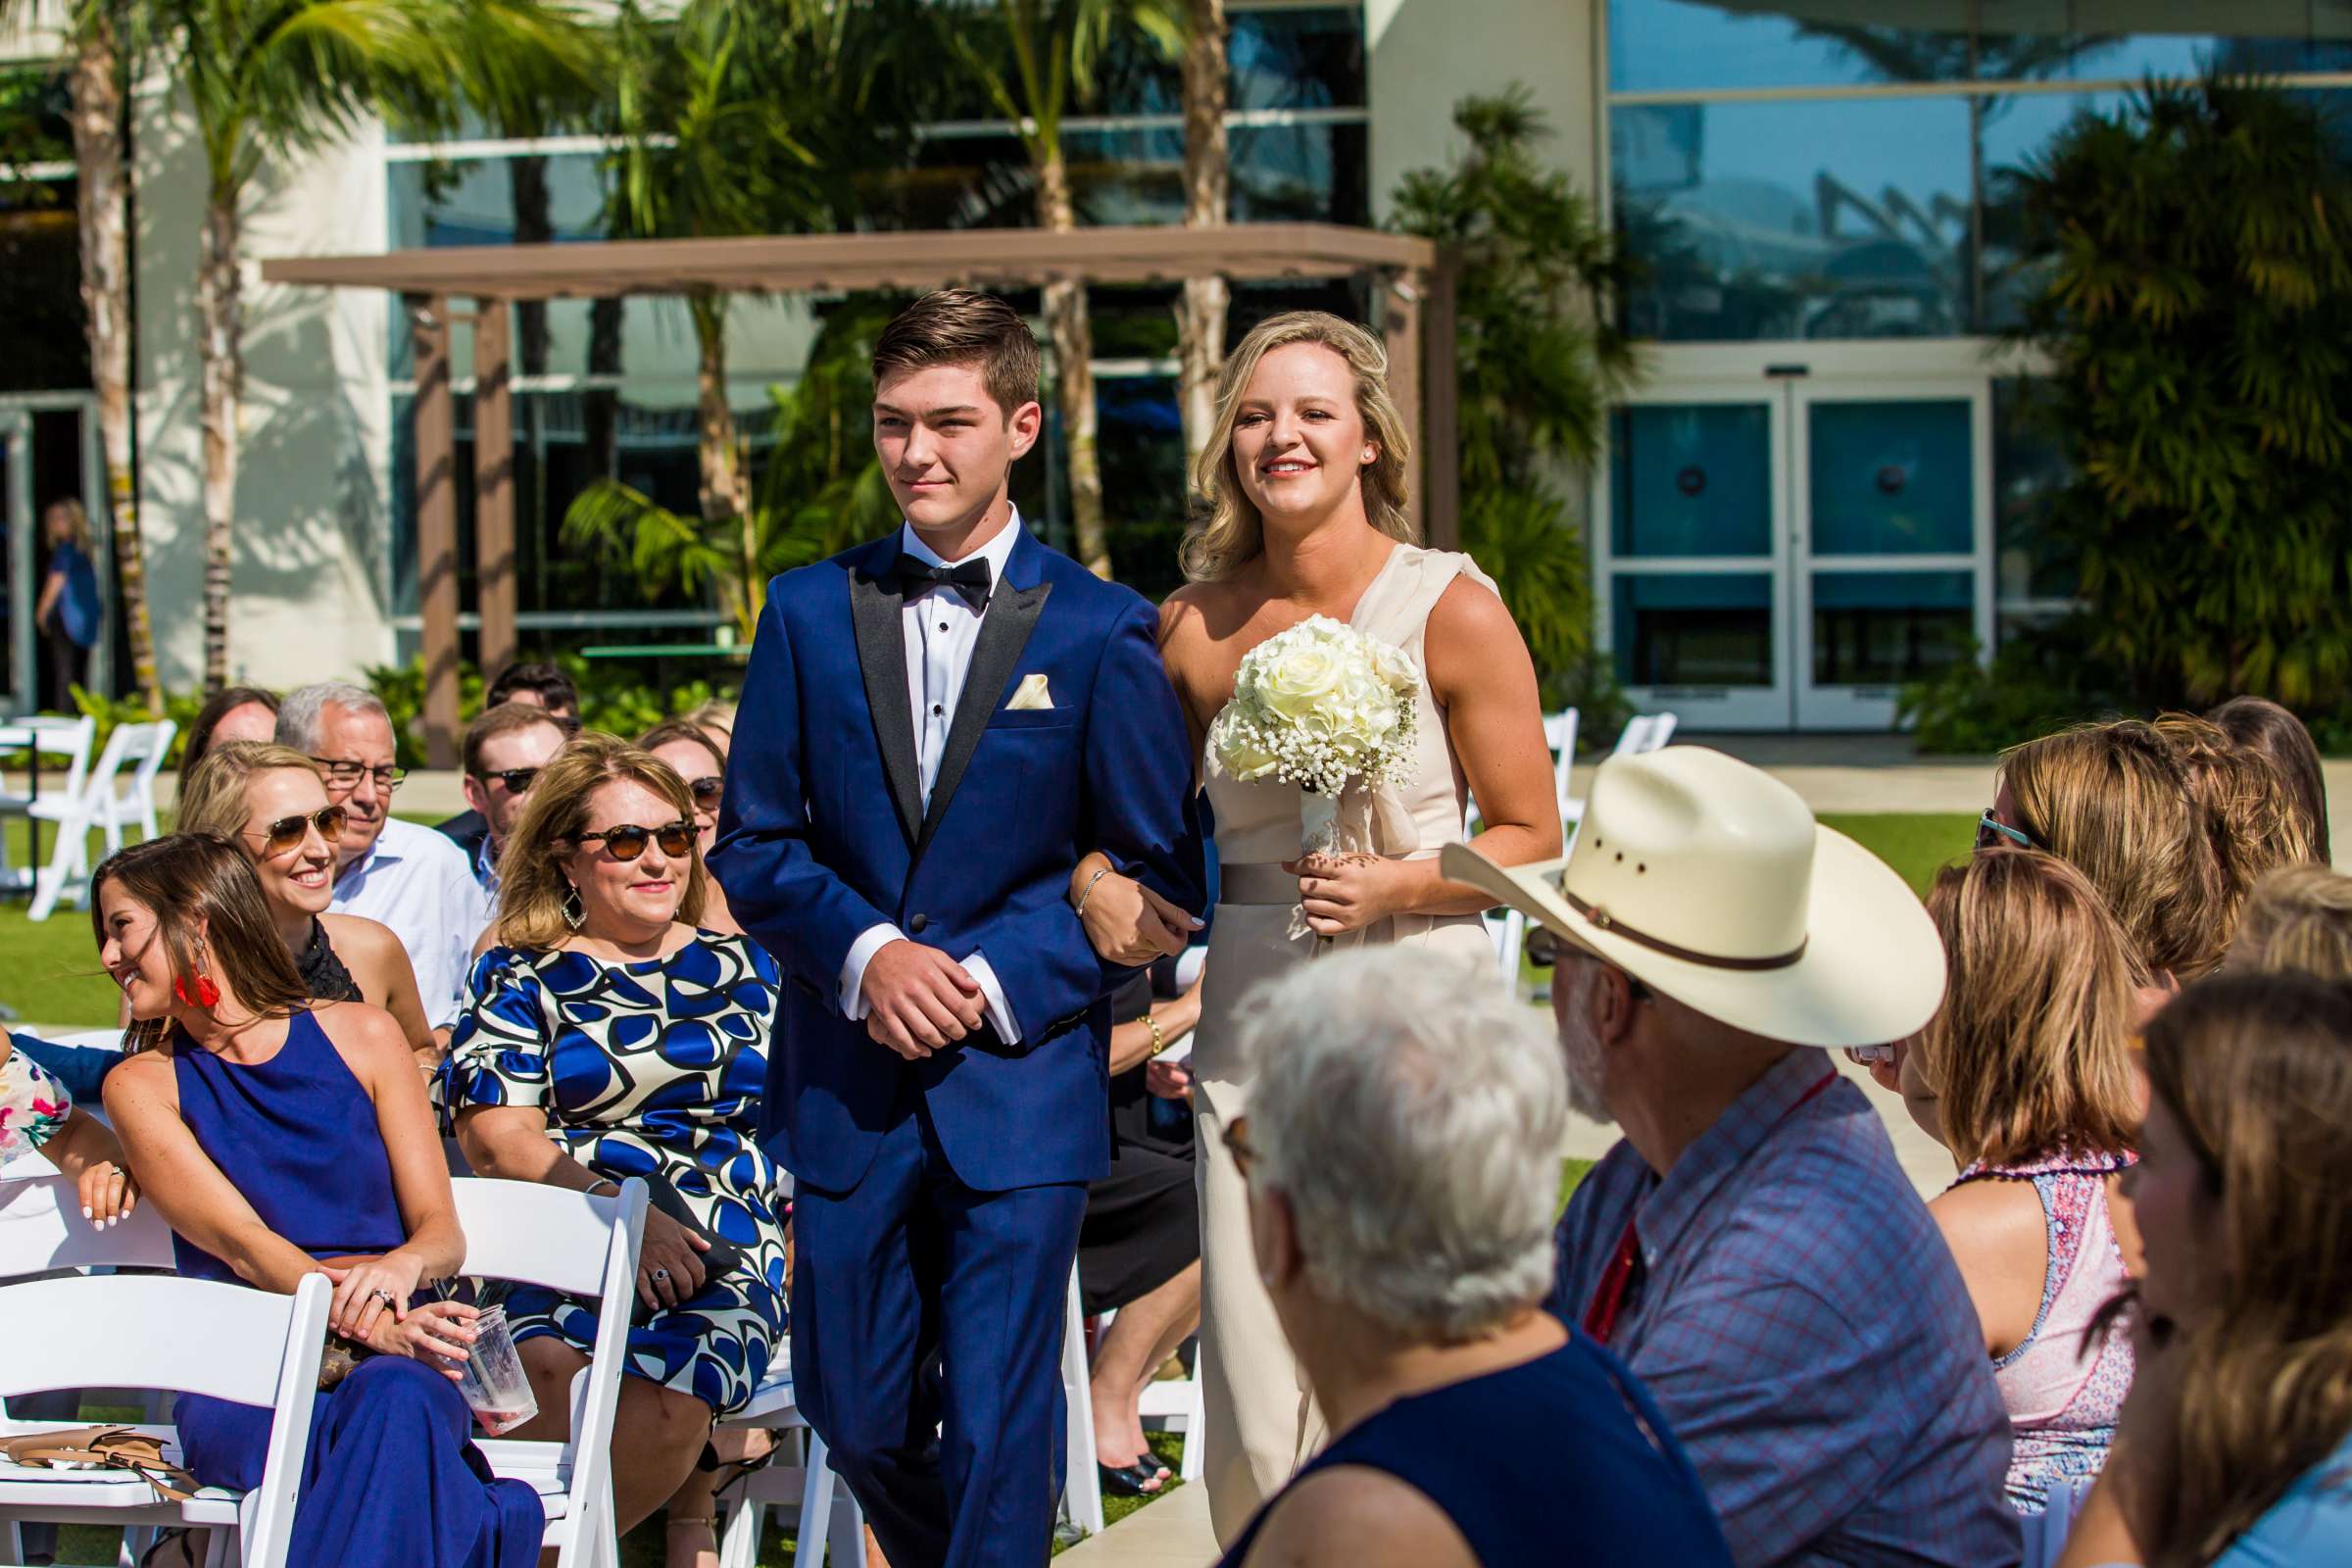 Hilton San Diego Bayfront Wedding, Debi and Dan Wedding Photo #484080 by True Photography